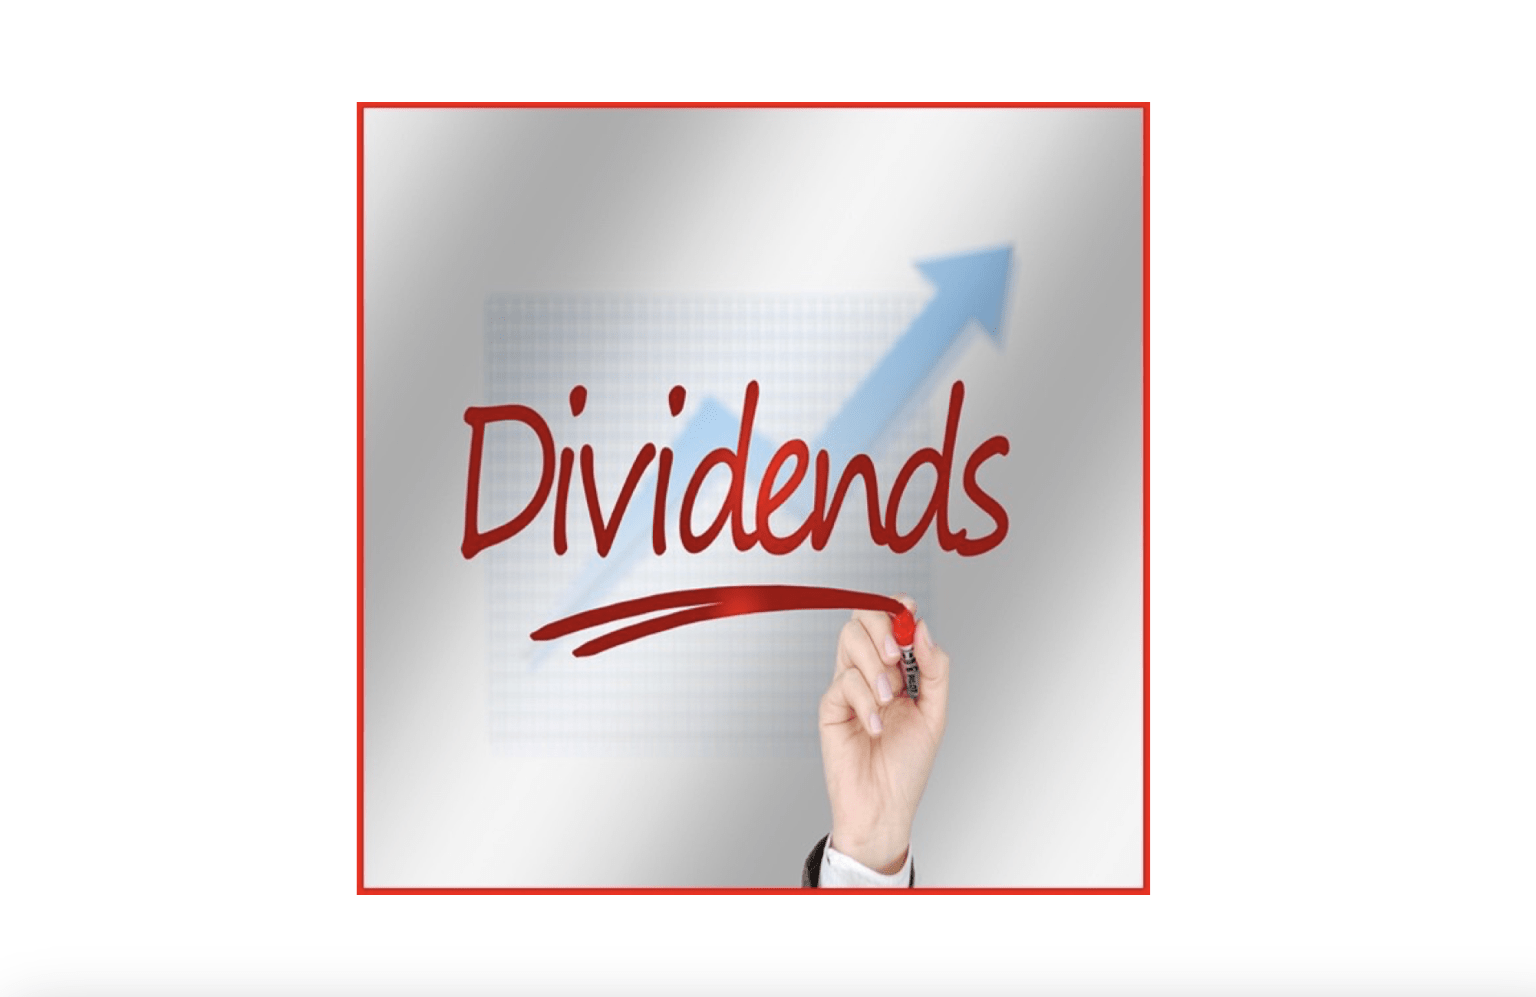 Mythes over dividendaandelen